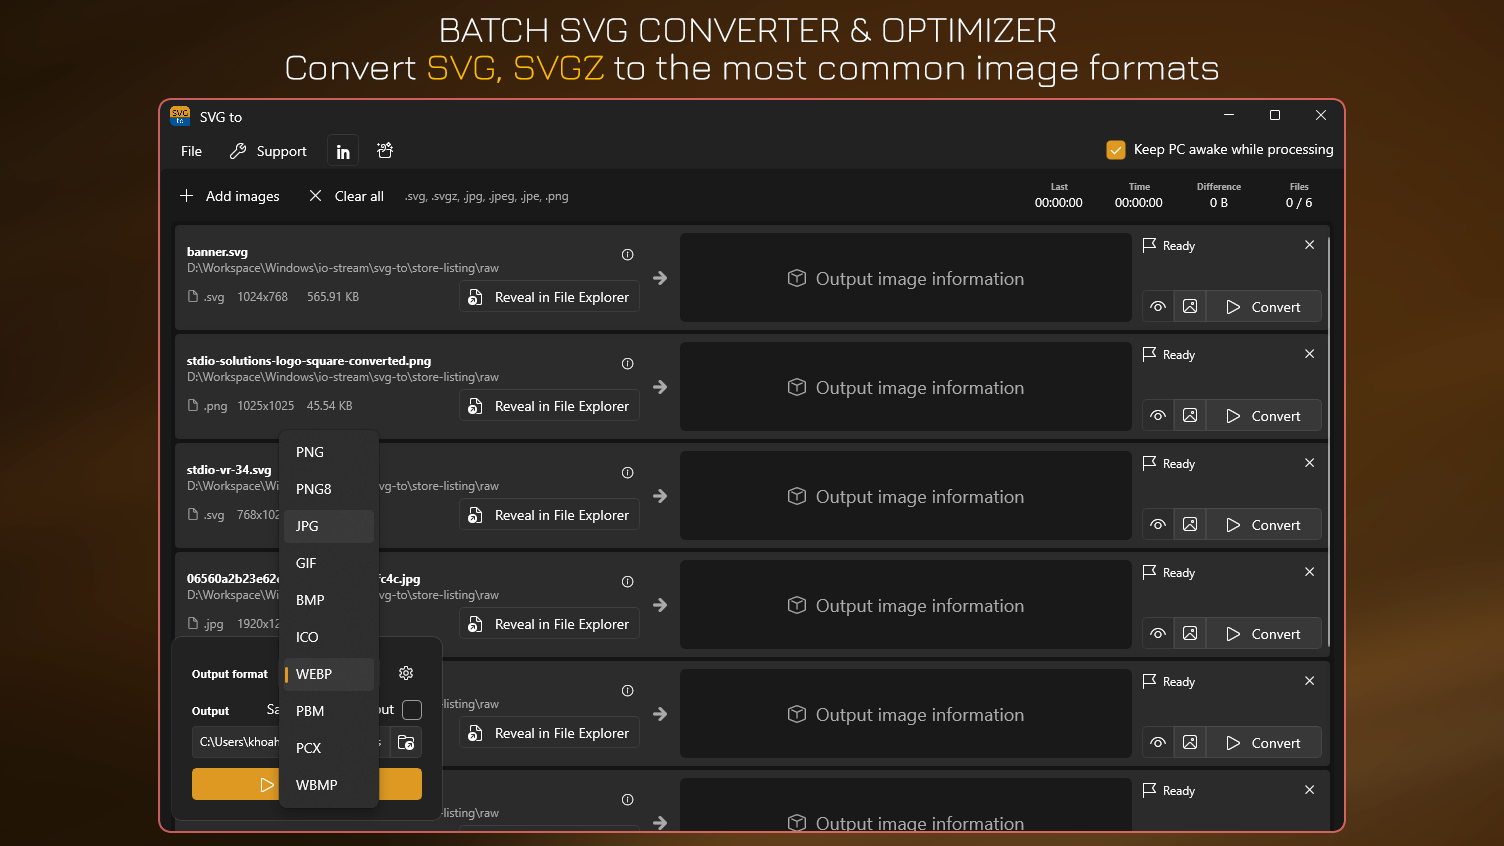 Batch SVG Converter & Optimizer - Convert SVG, SVGZ to PNG, JPG, GIF, WEBP and more.